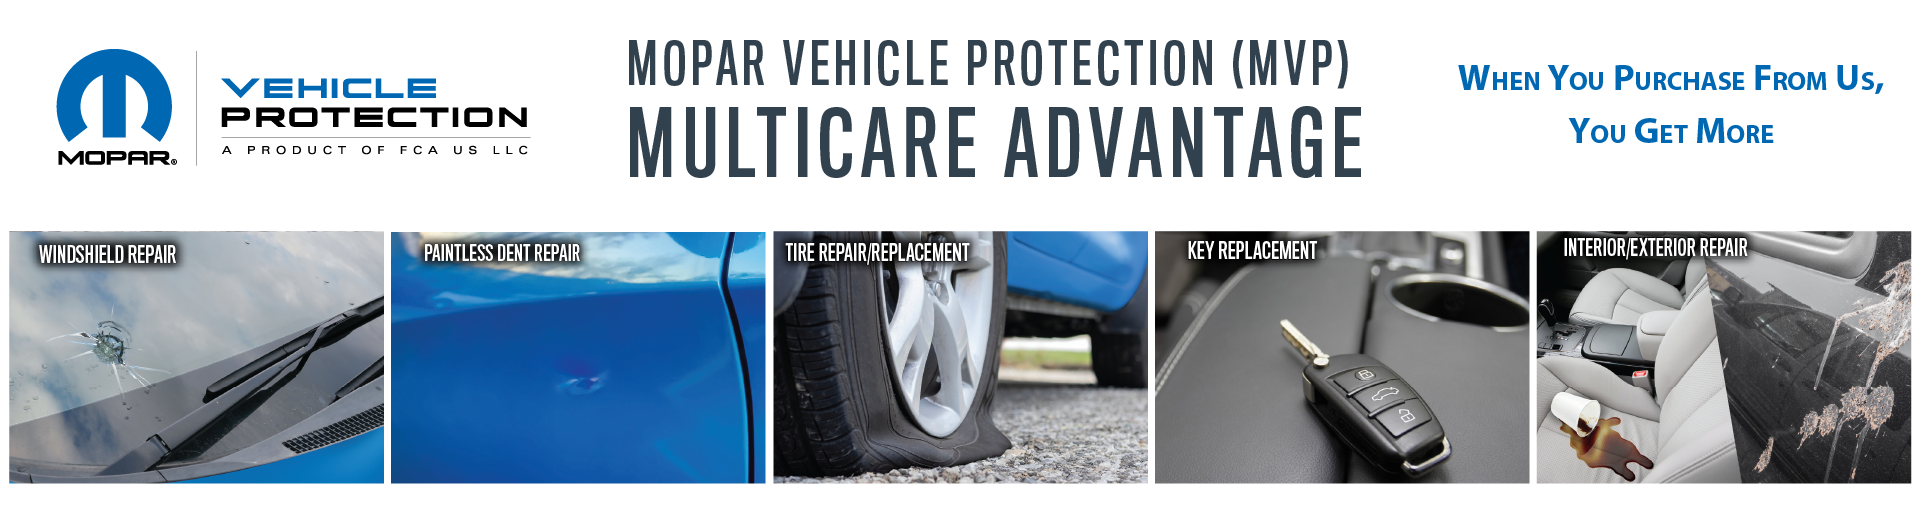 Mopar Vehicle Protection Multicare Advantage